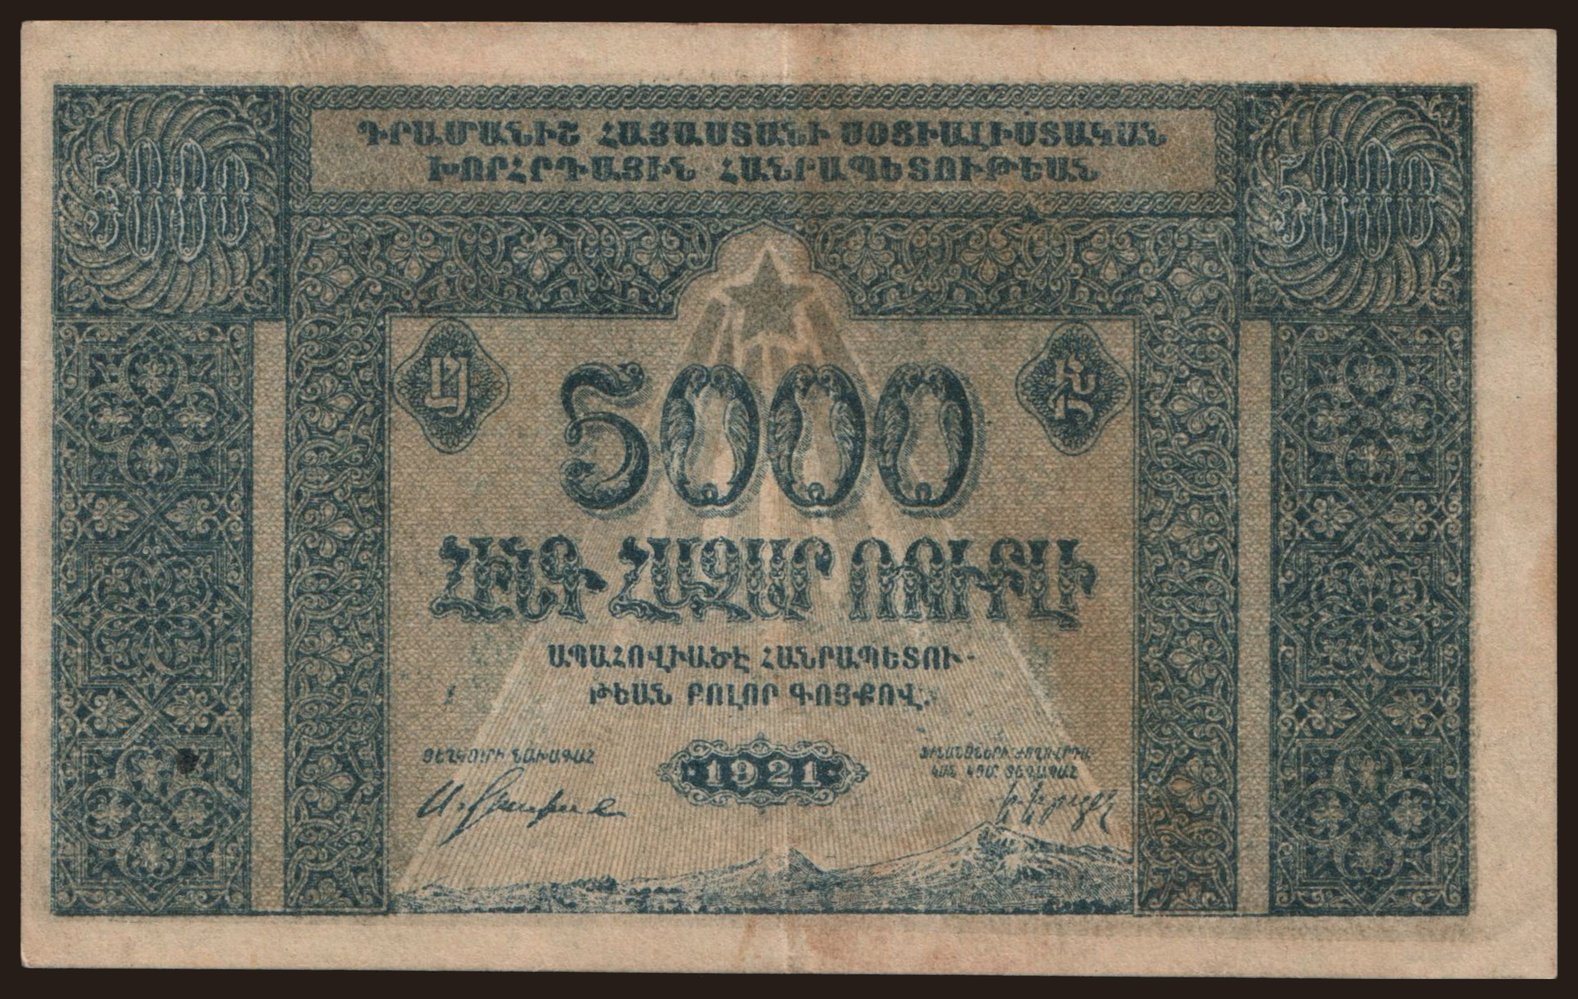 Armenia, 5000 rubel, 1921